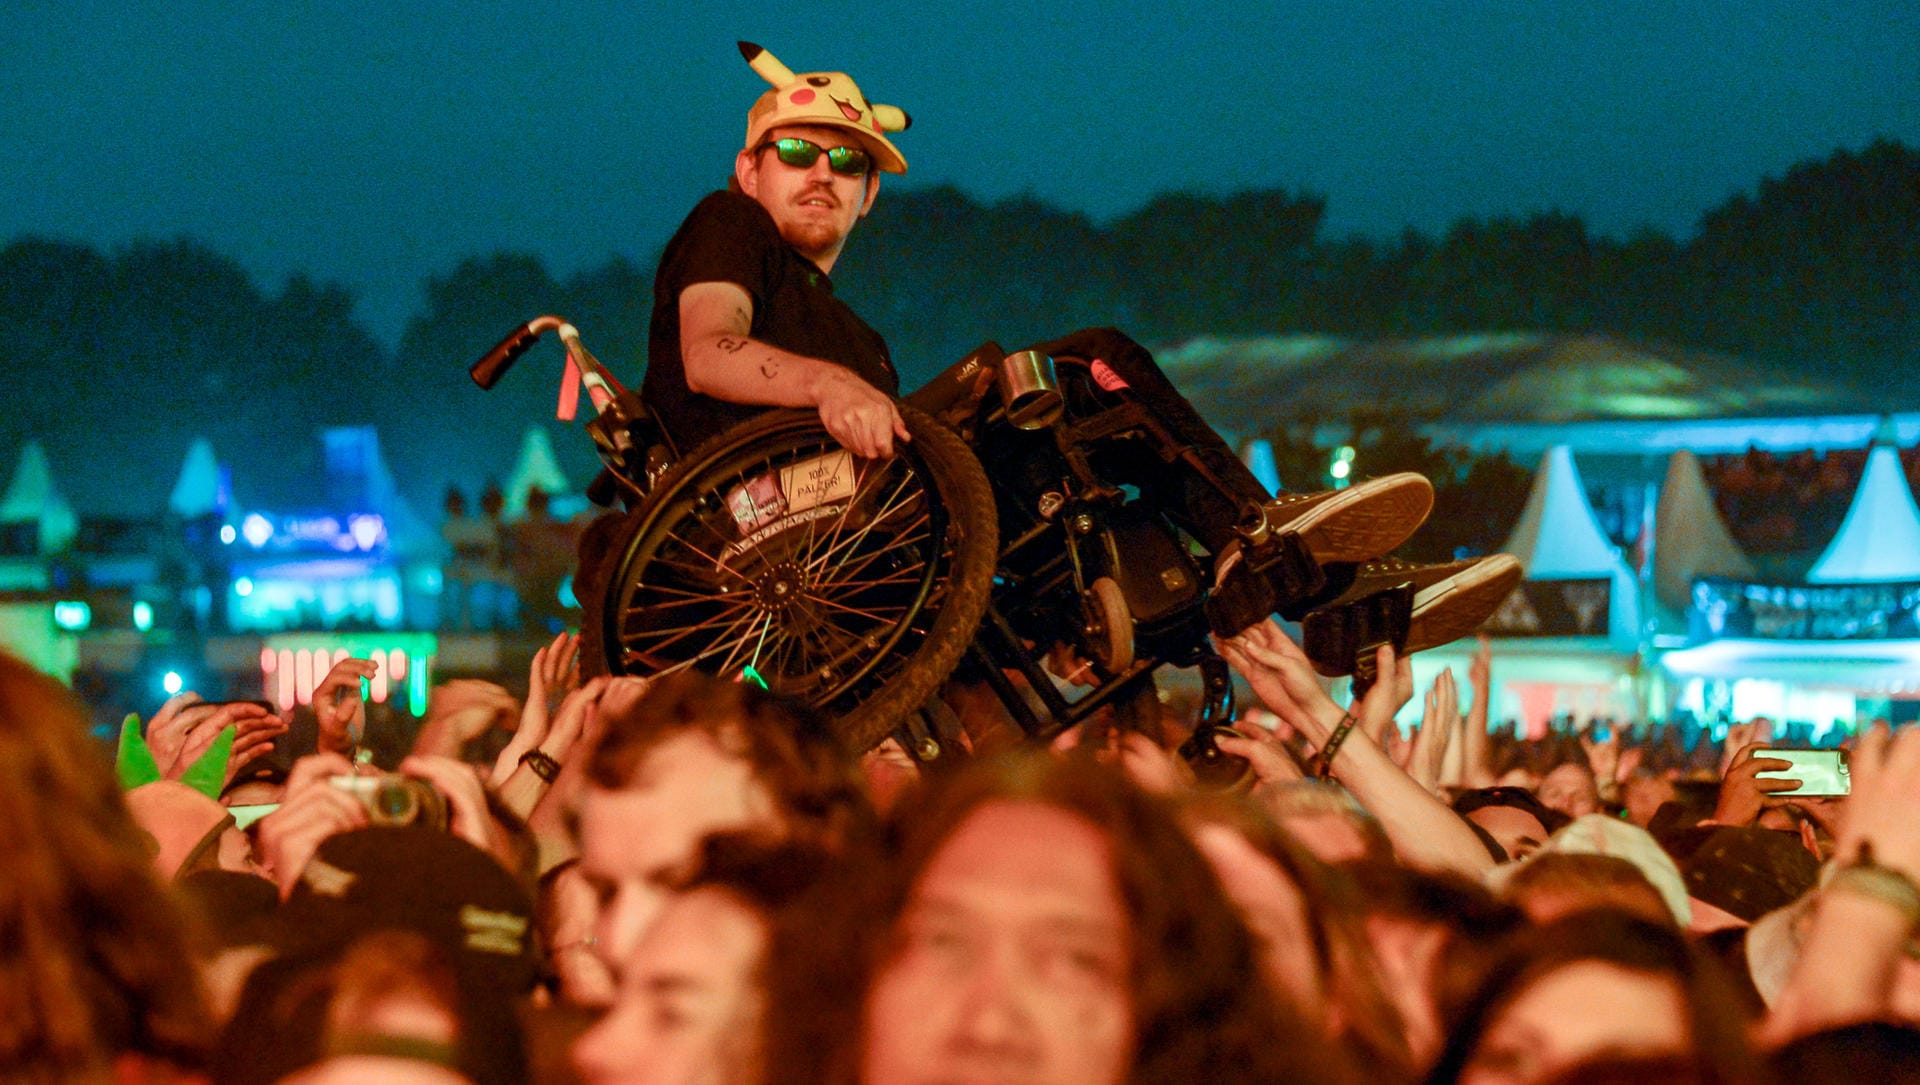 Beim Konzert der britischen Band Judas Priest: Ein Rollstuhlfahrer macht Crowdsurfing.